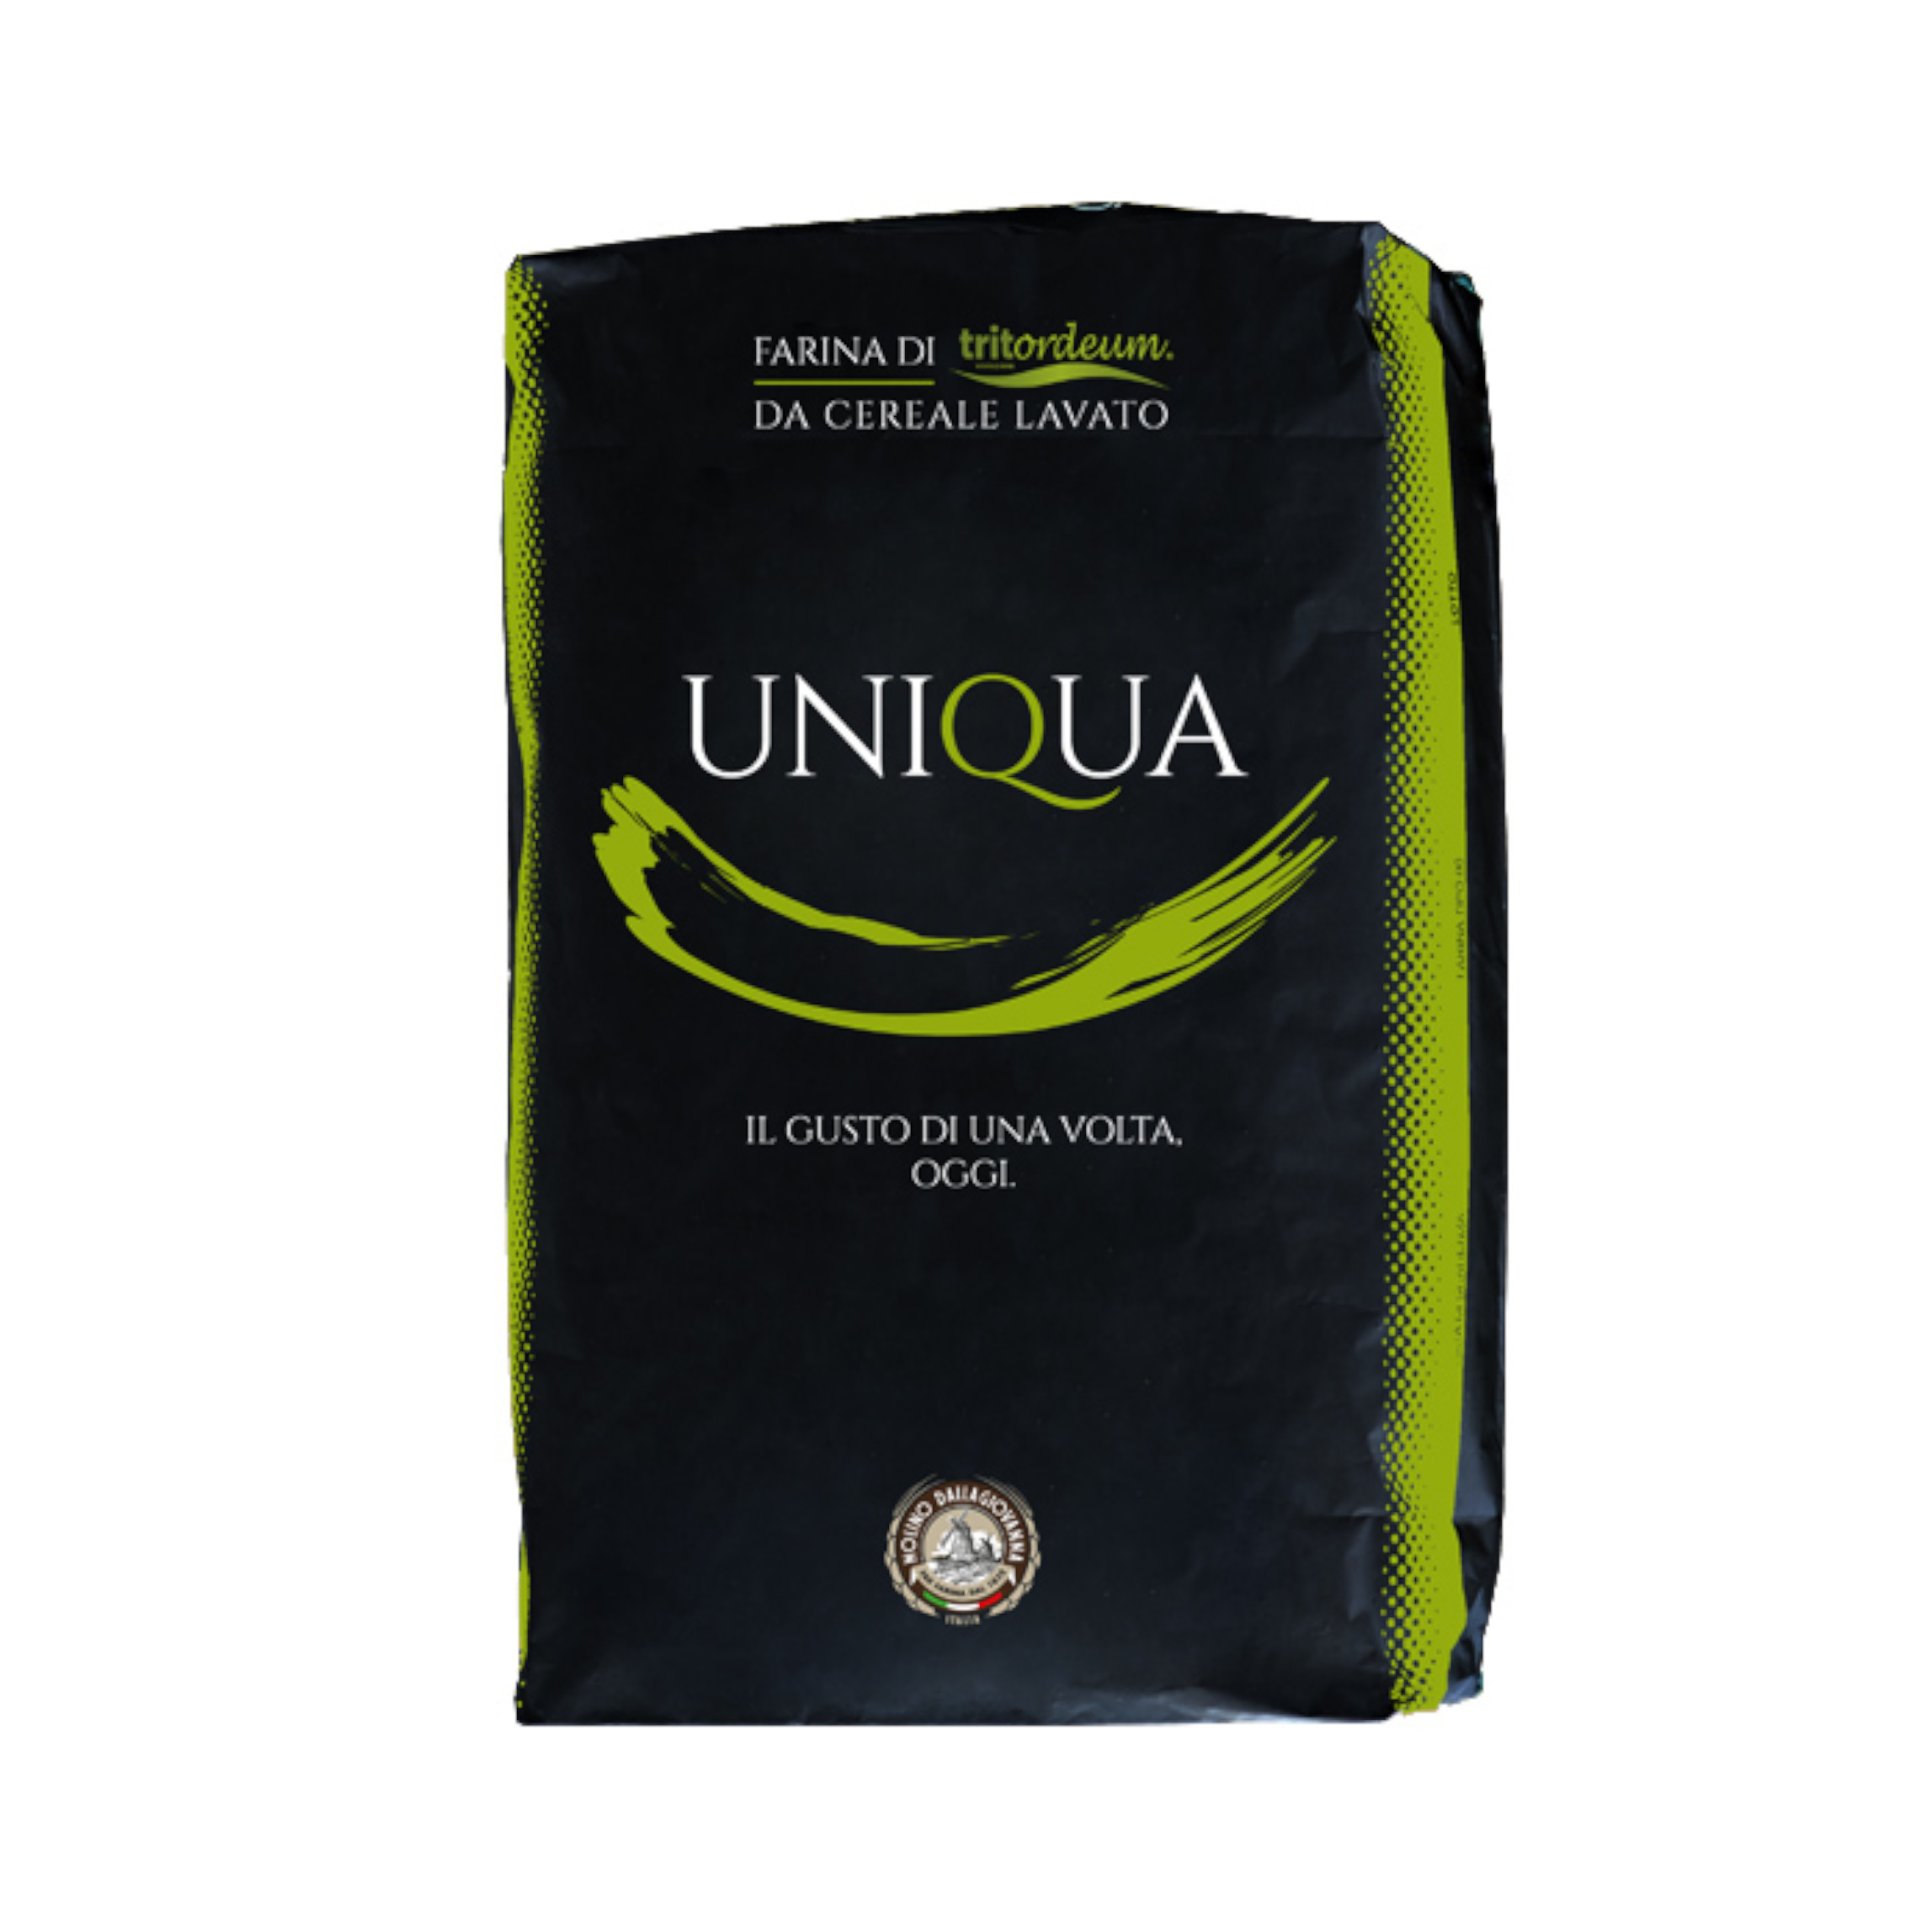 Farina Tritordeum Uniqua Verde W250 sacchetto da 1kg